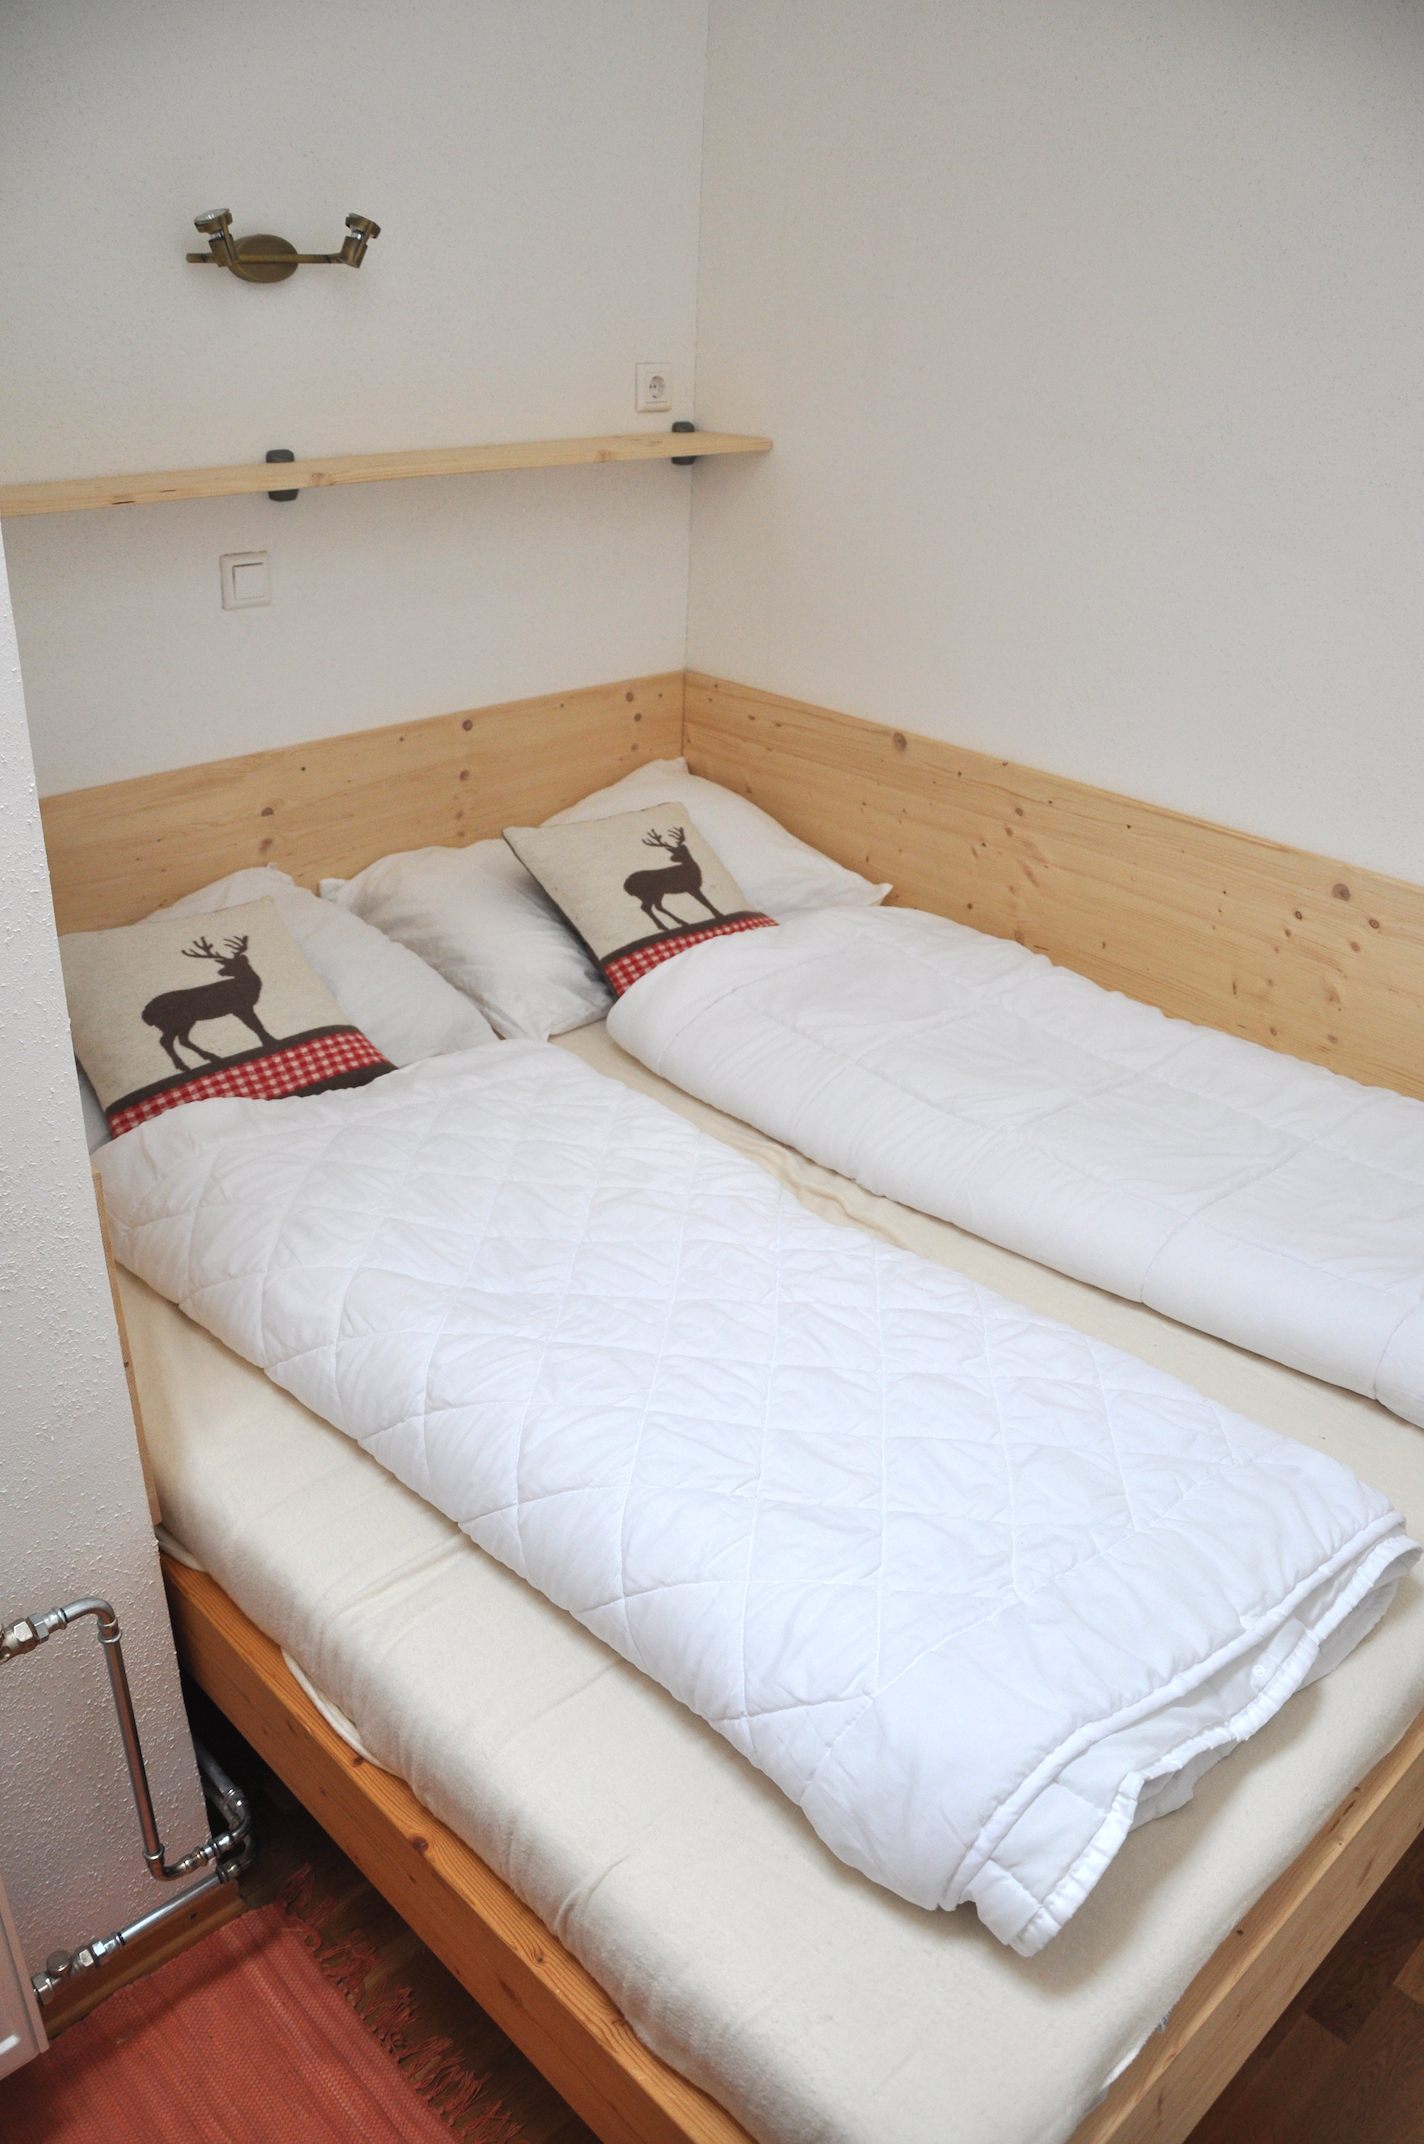 Zweites Schlafzimmer mit Doppelbett